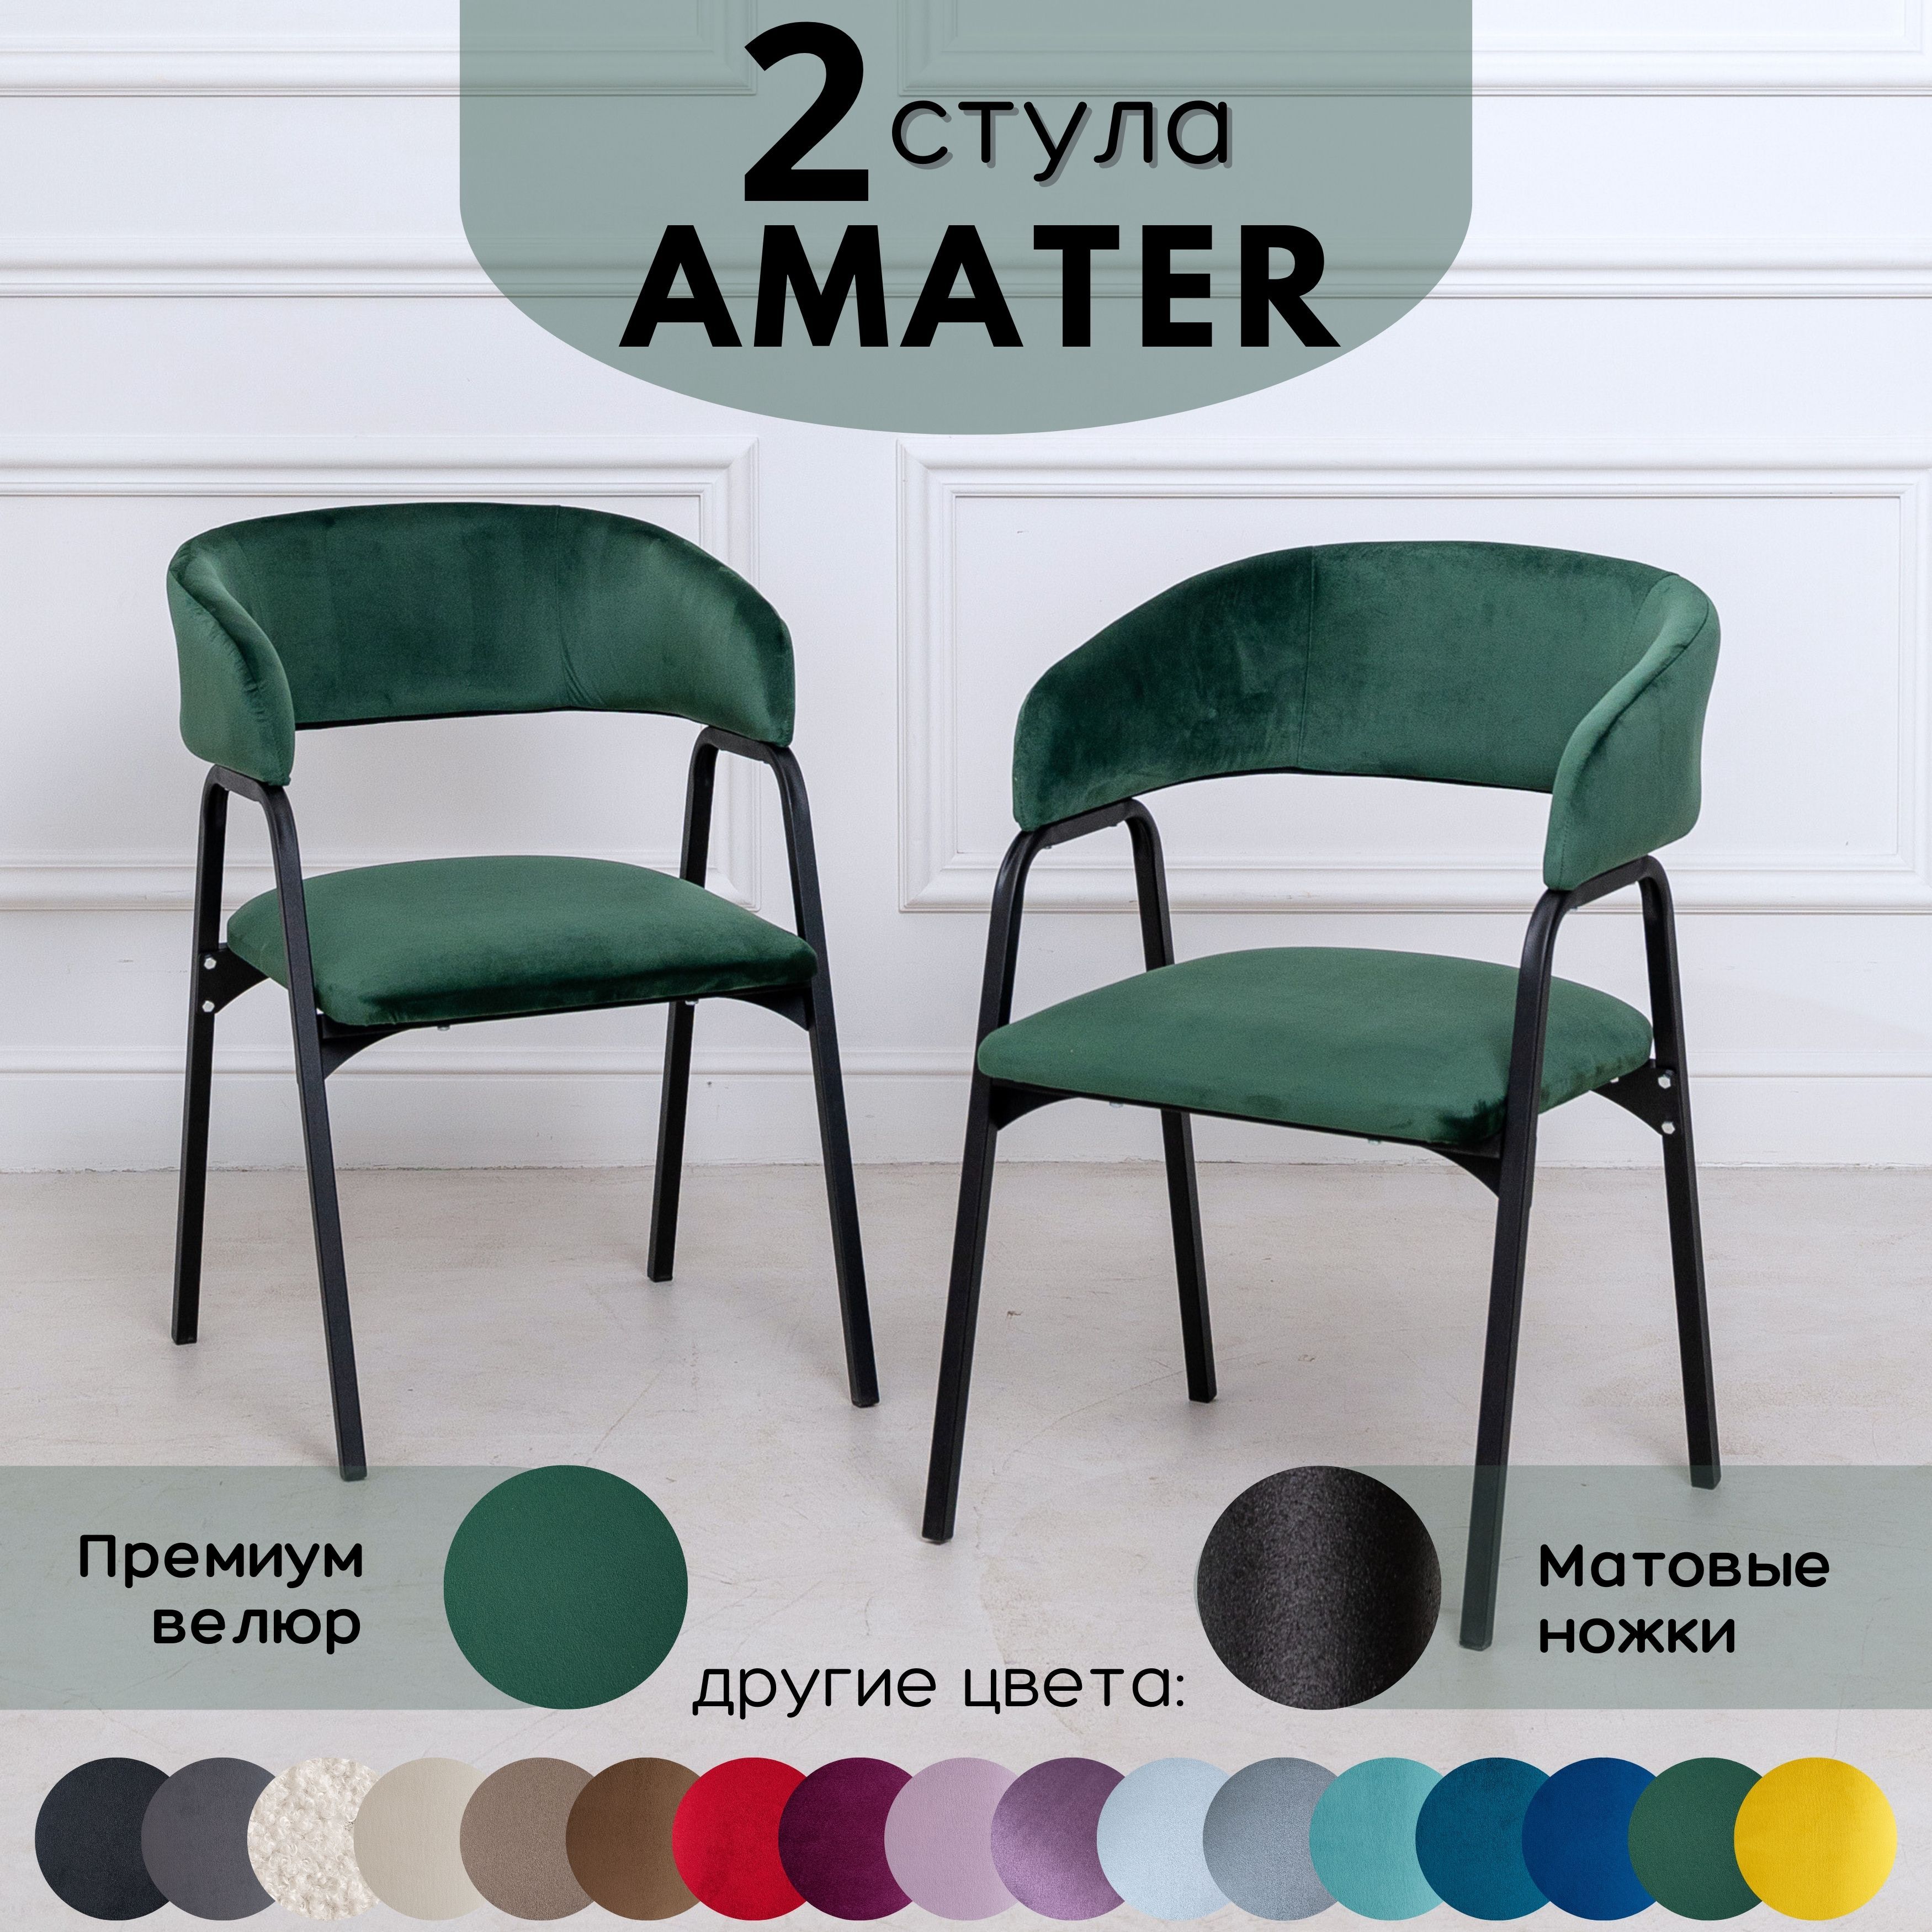 Стулья для кухни Stuler Chairs Amater 2 шт, Лесной зеленый велюр